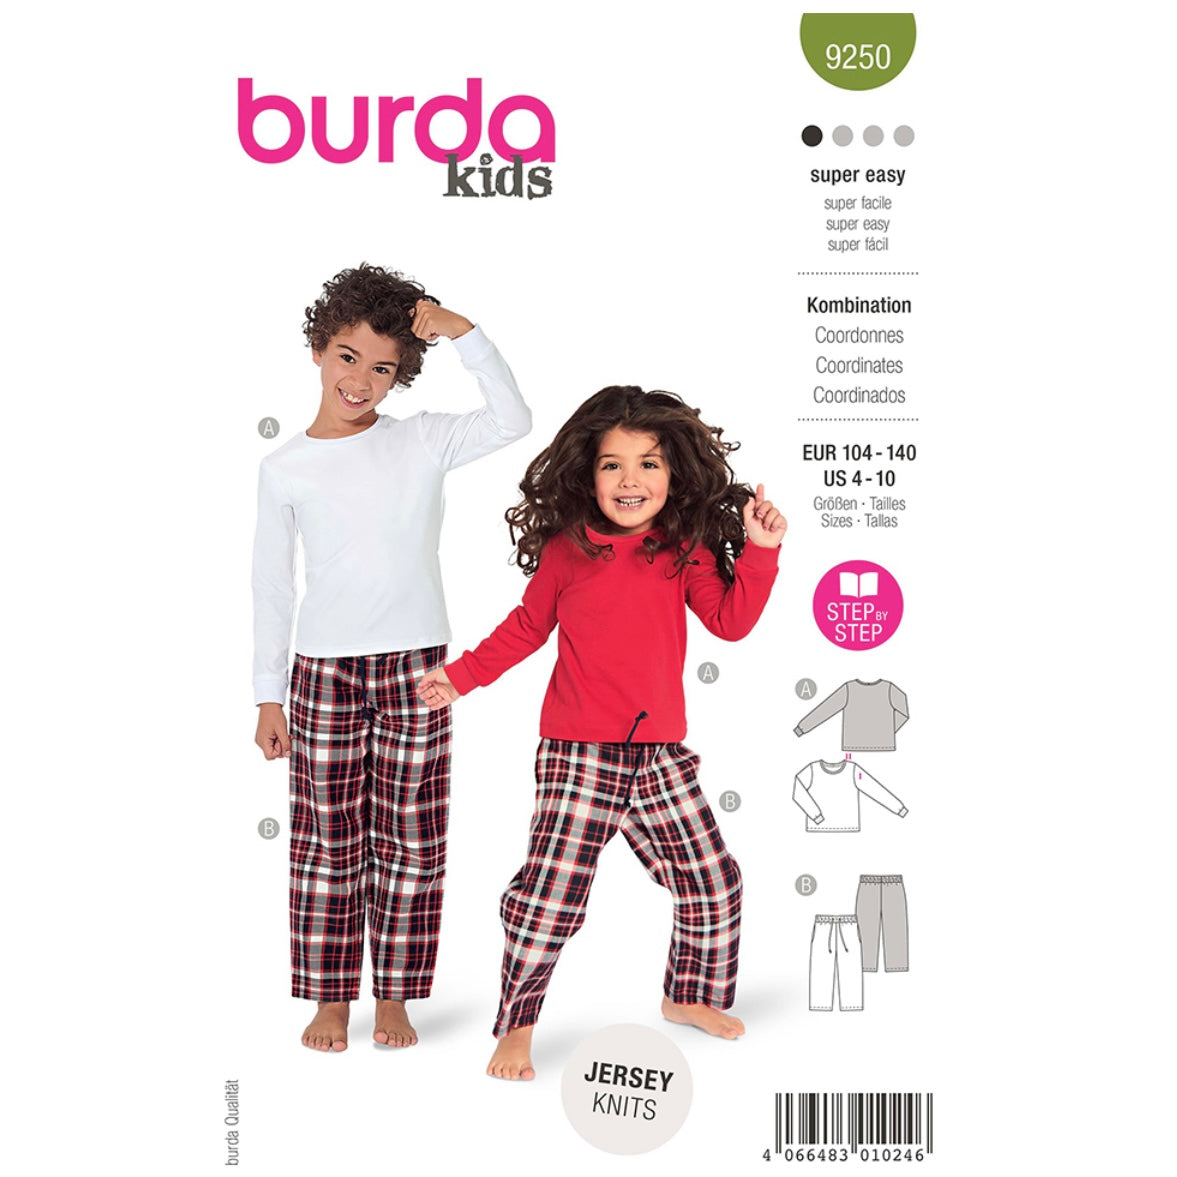 Burda Kids 9250 - Coordinates Sewing Pattern